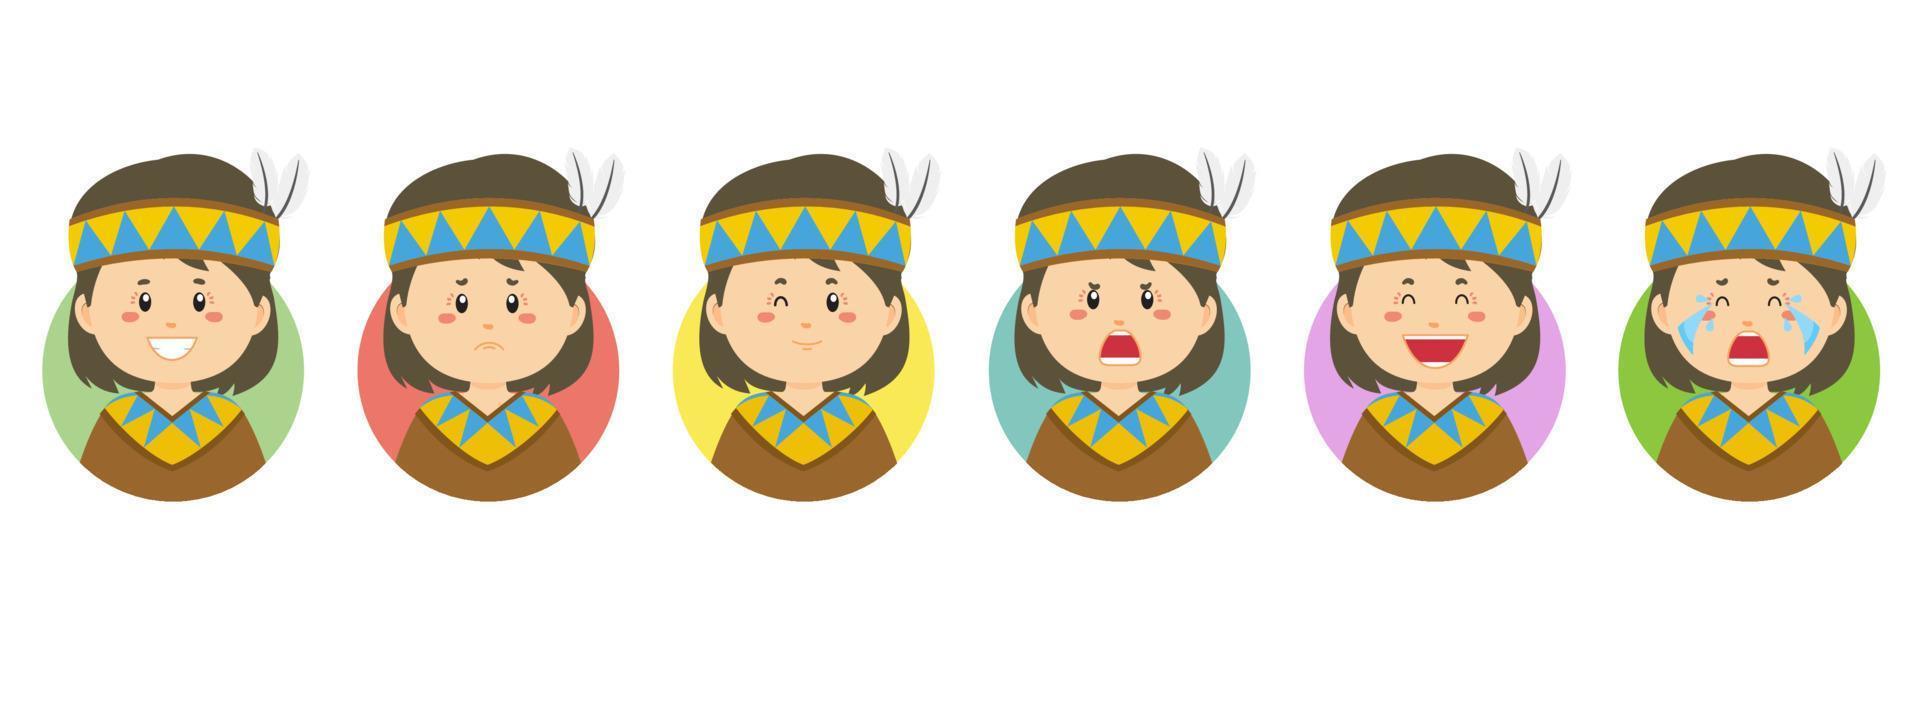 avatar nativo americano con varias expresiones vector